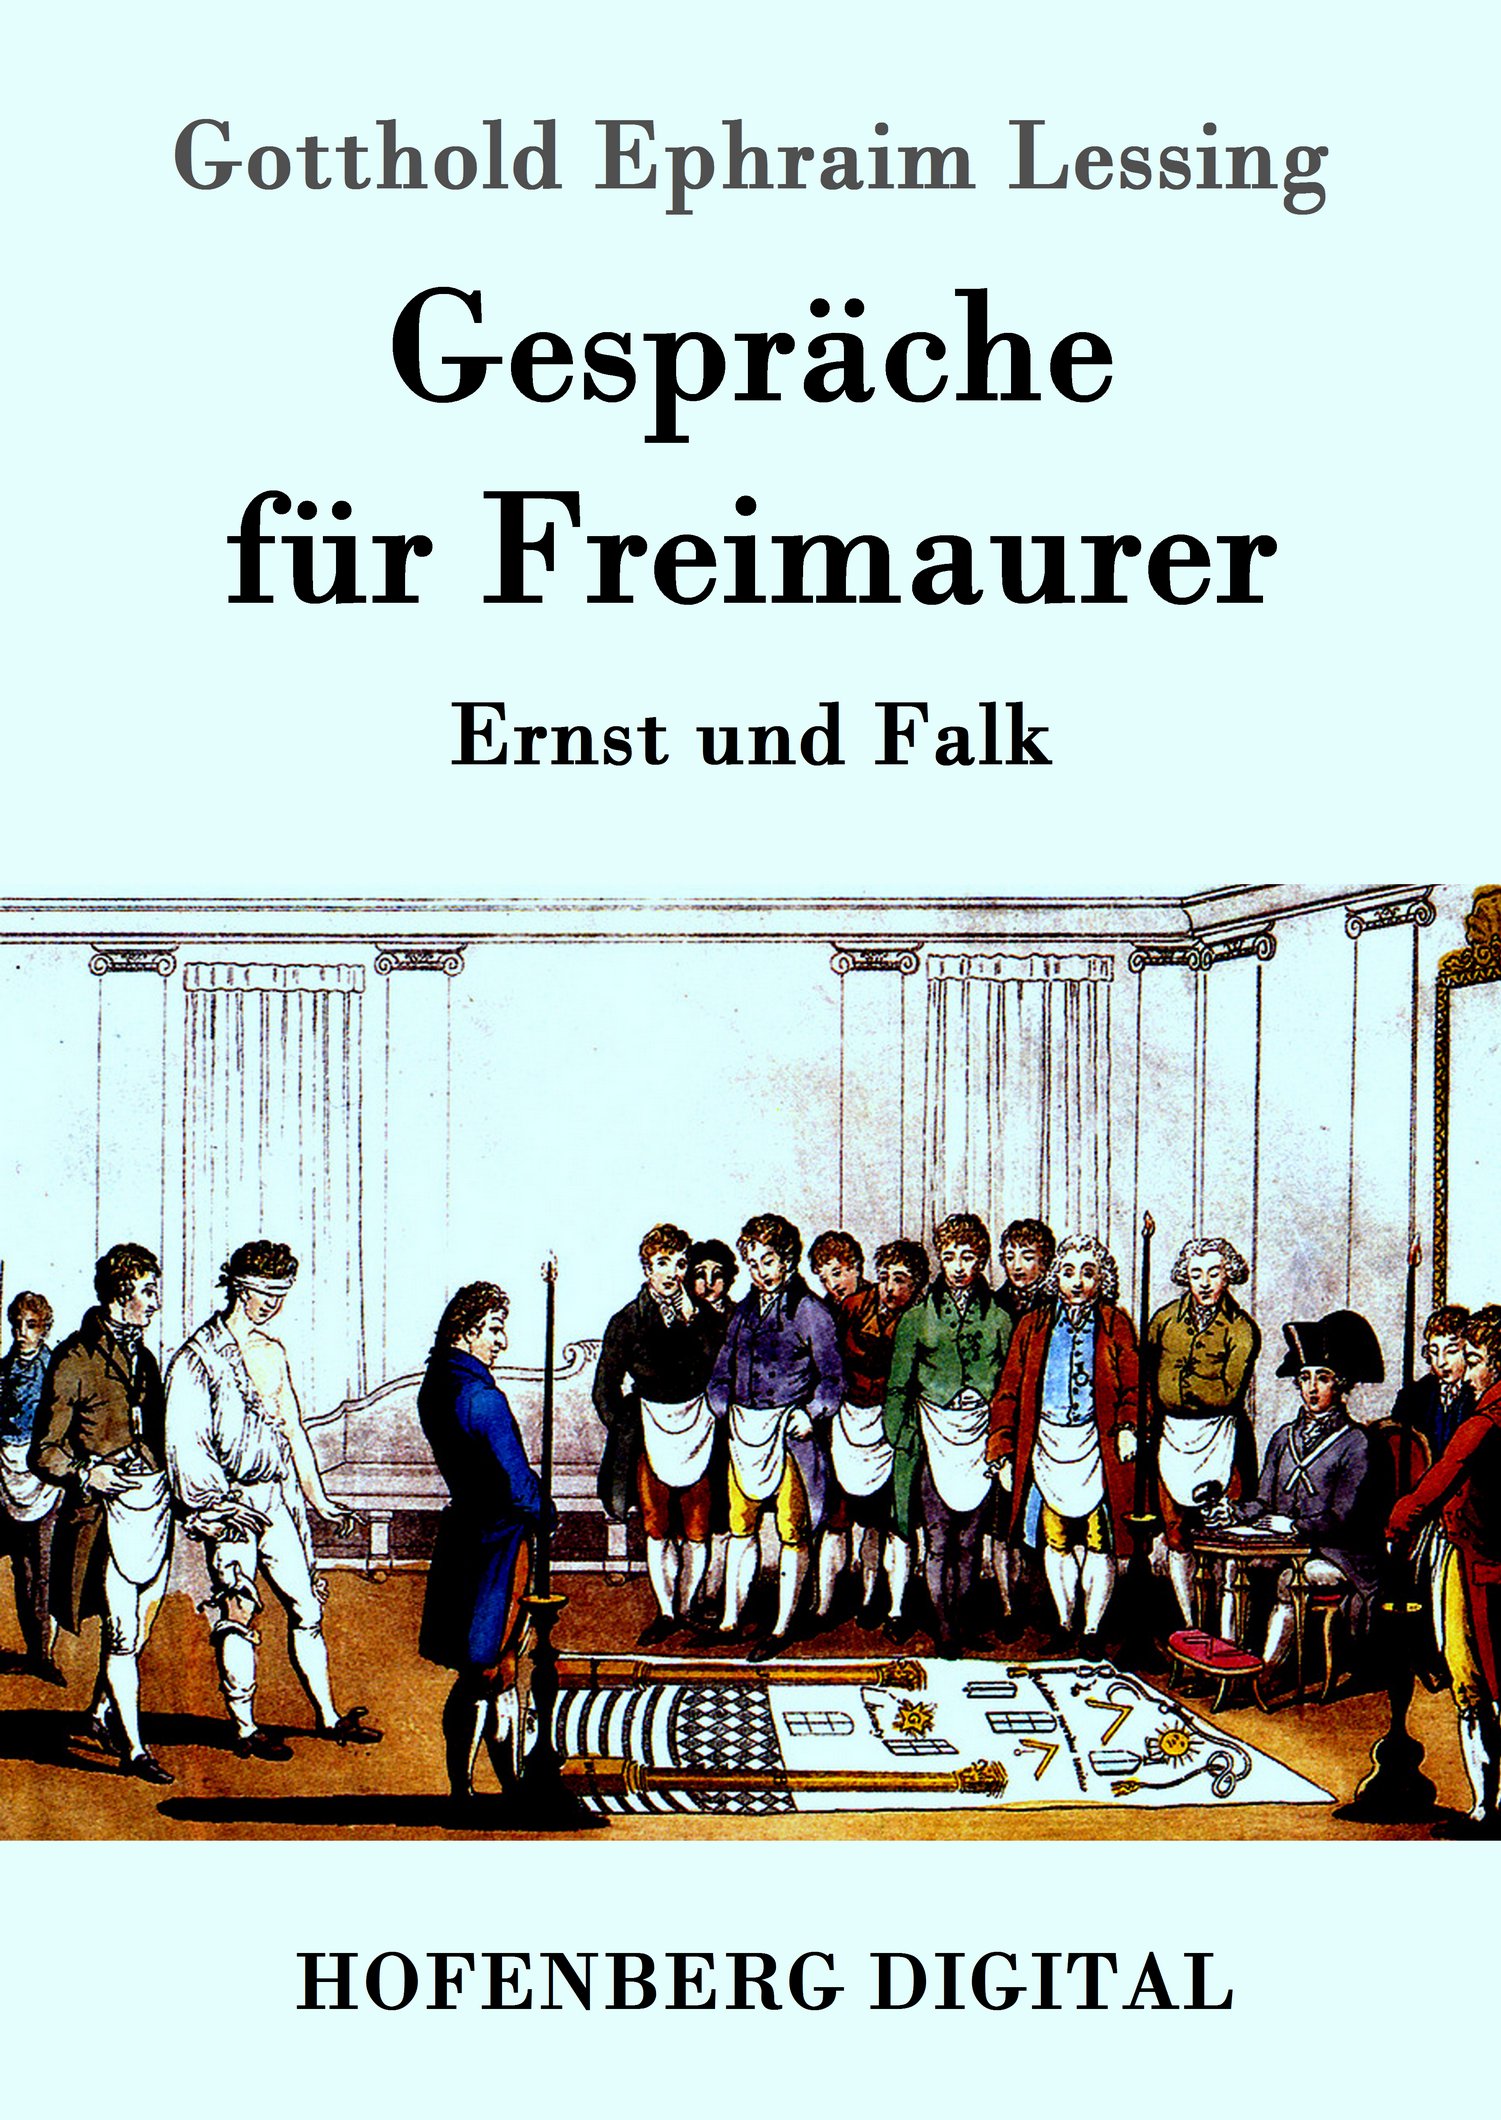 Gotthold Ephraim Lessing: Gespräche für Freimaurer